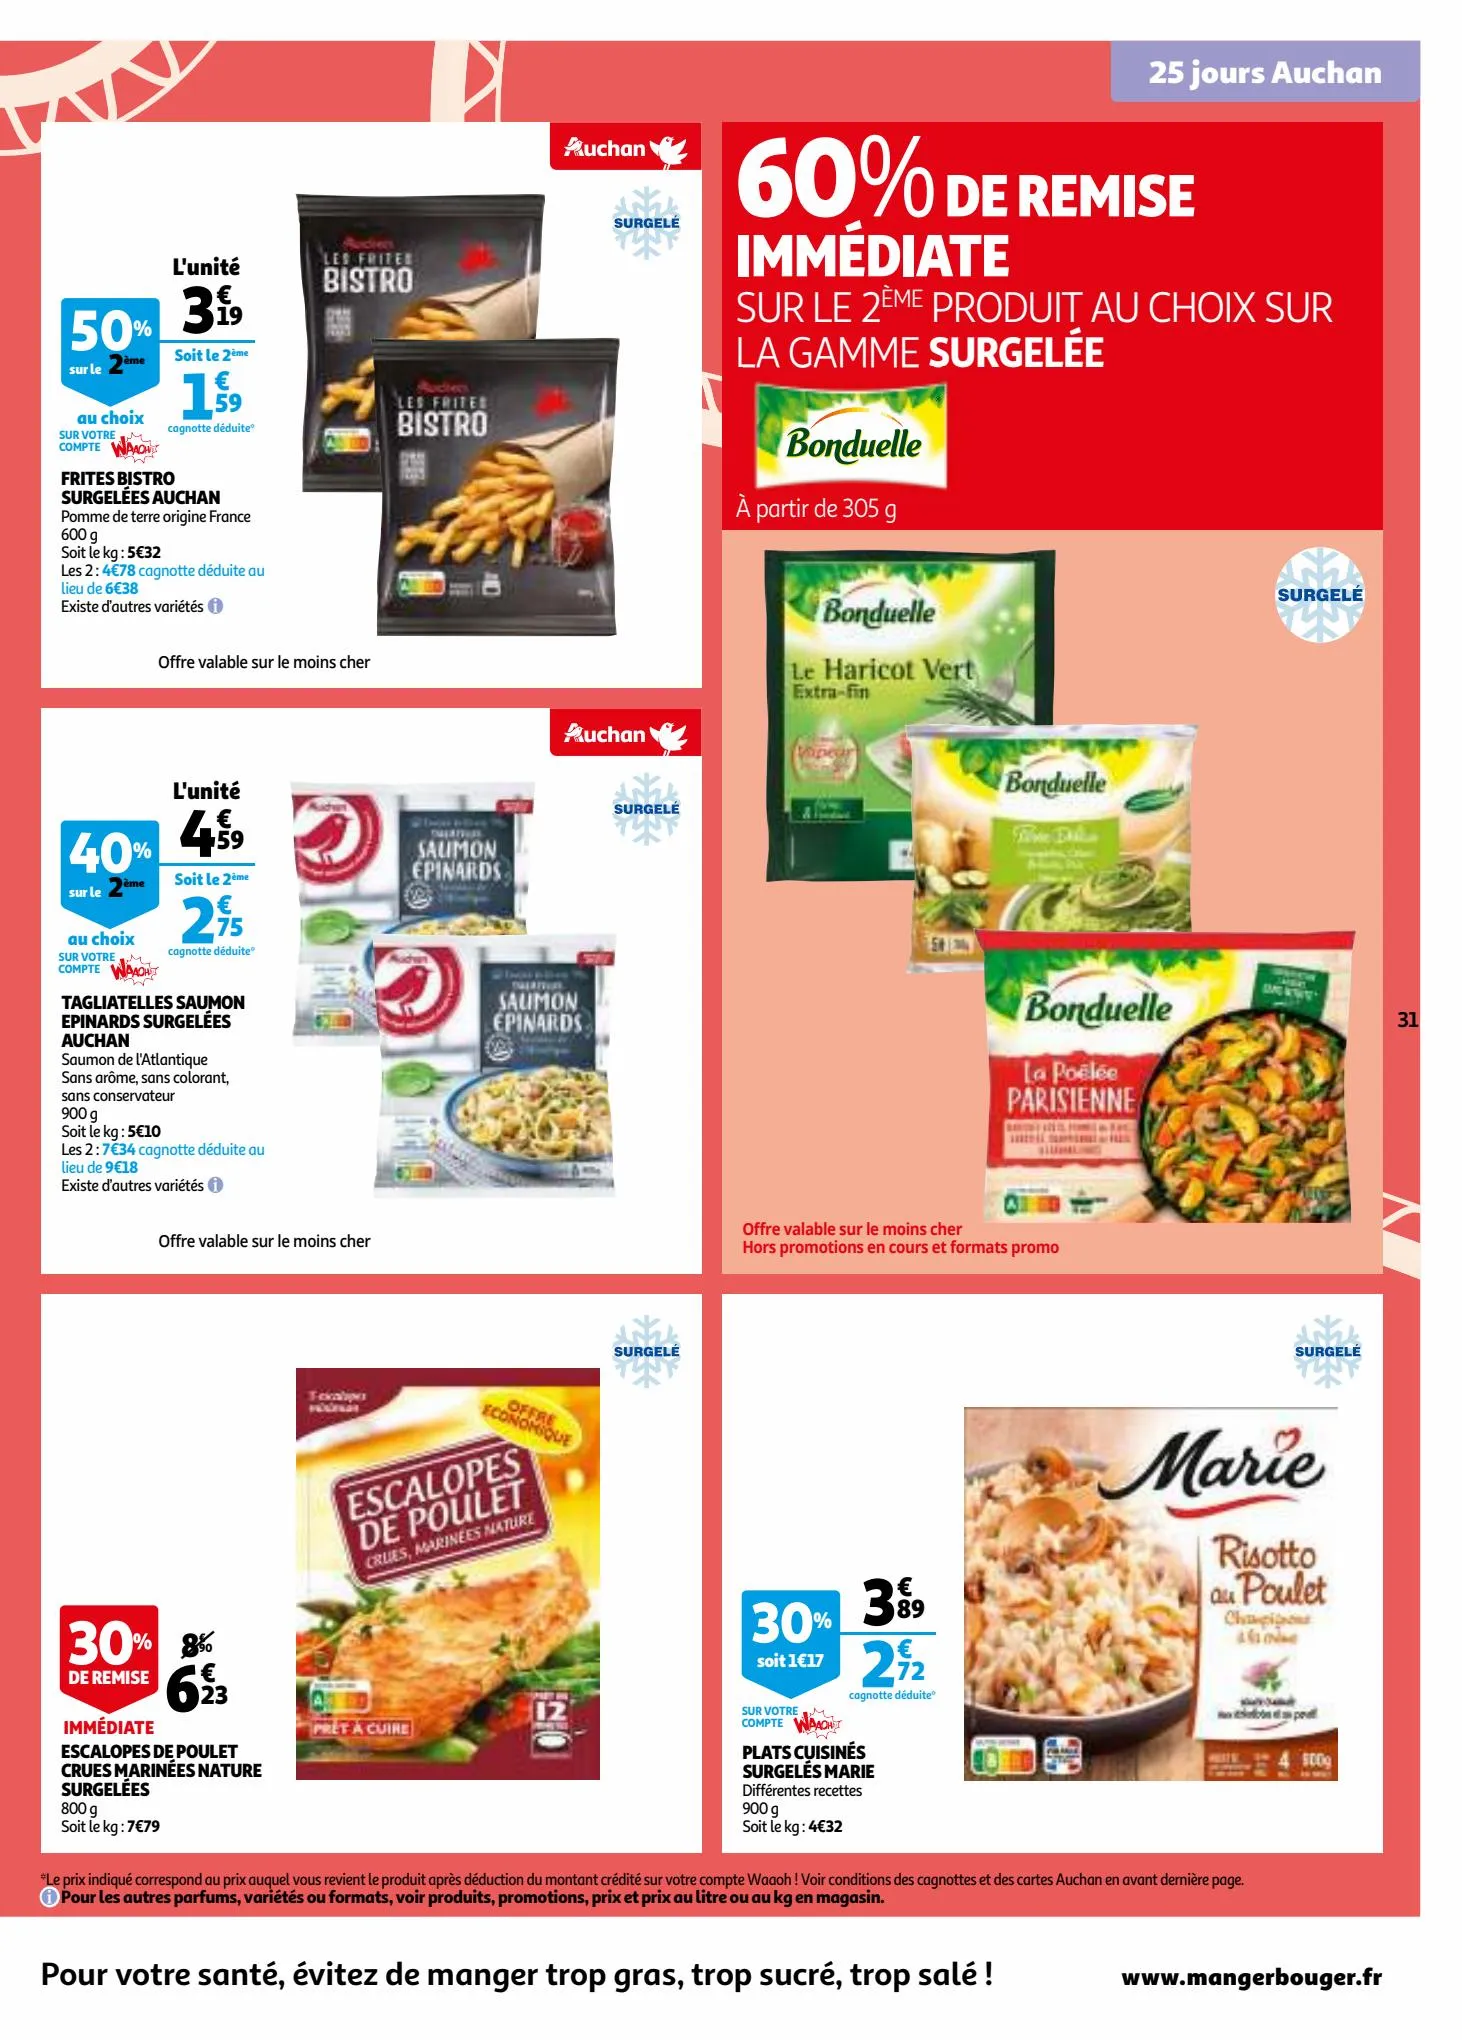 Catalogue 25 jours Auchan, page 00031